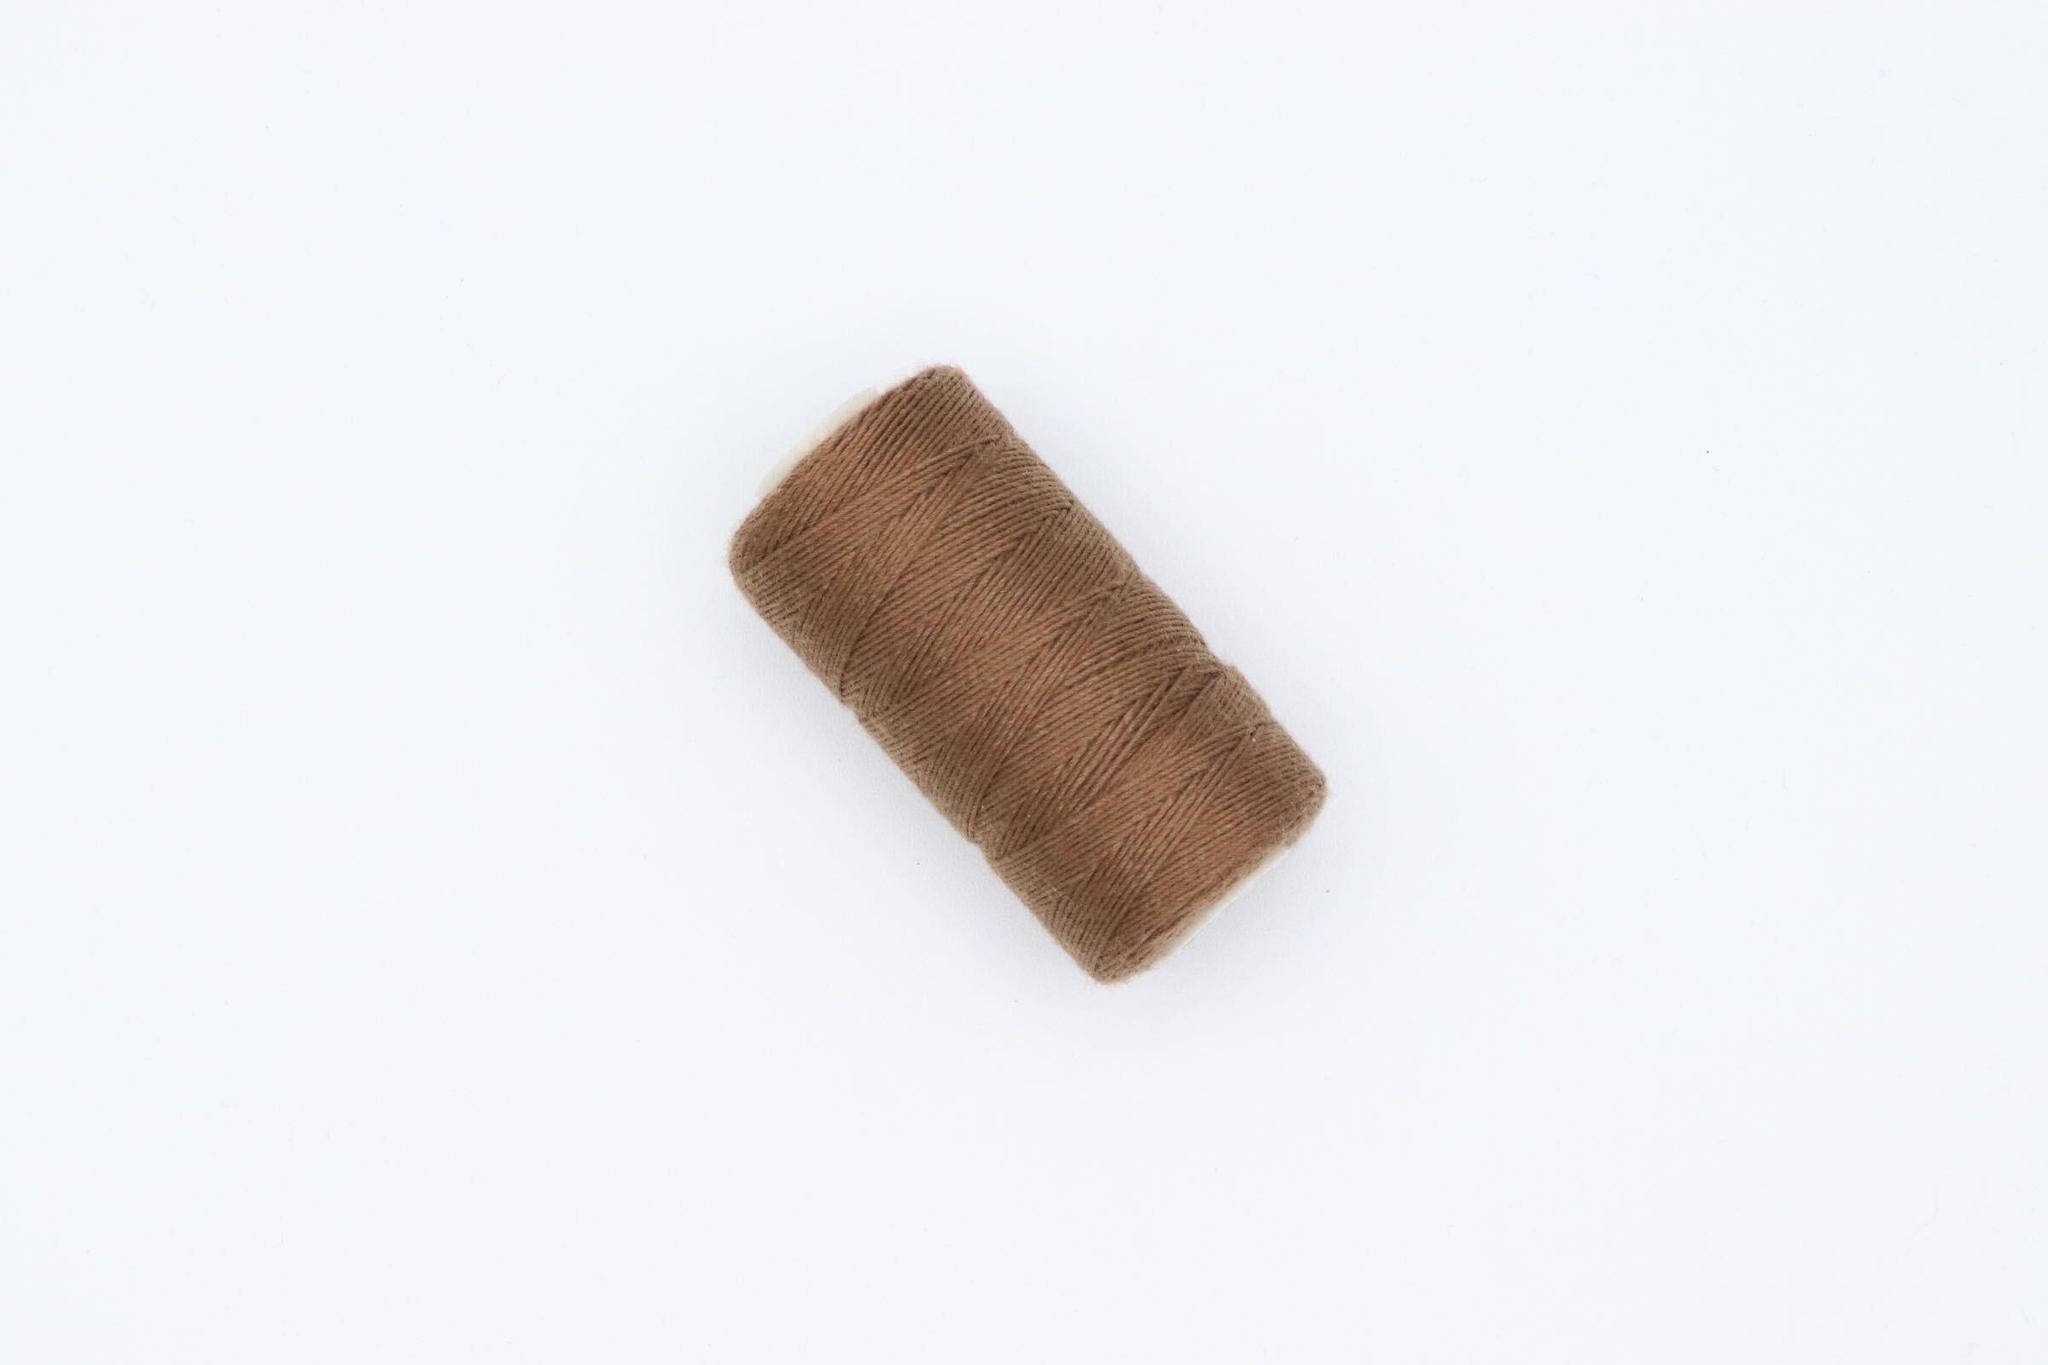 Laced Hair Mini Weaving Thread